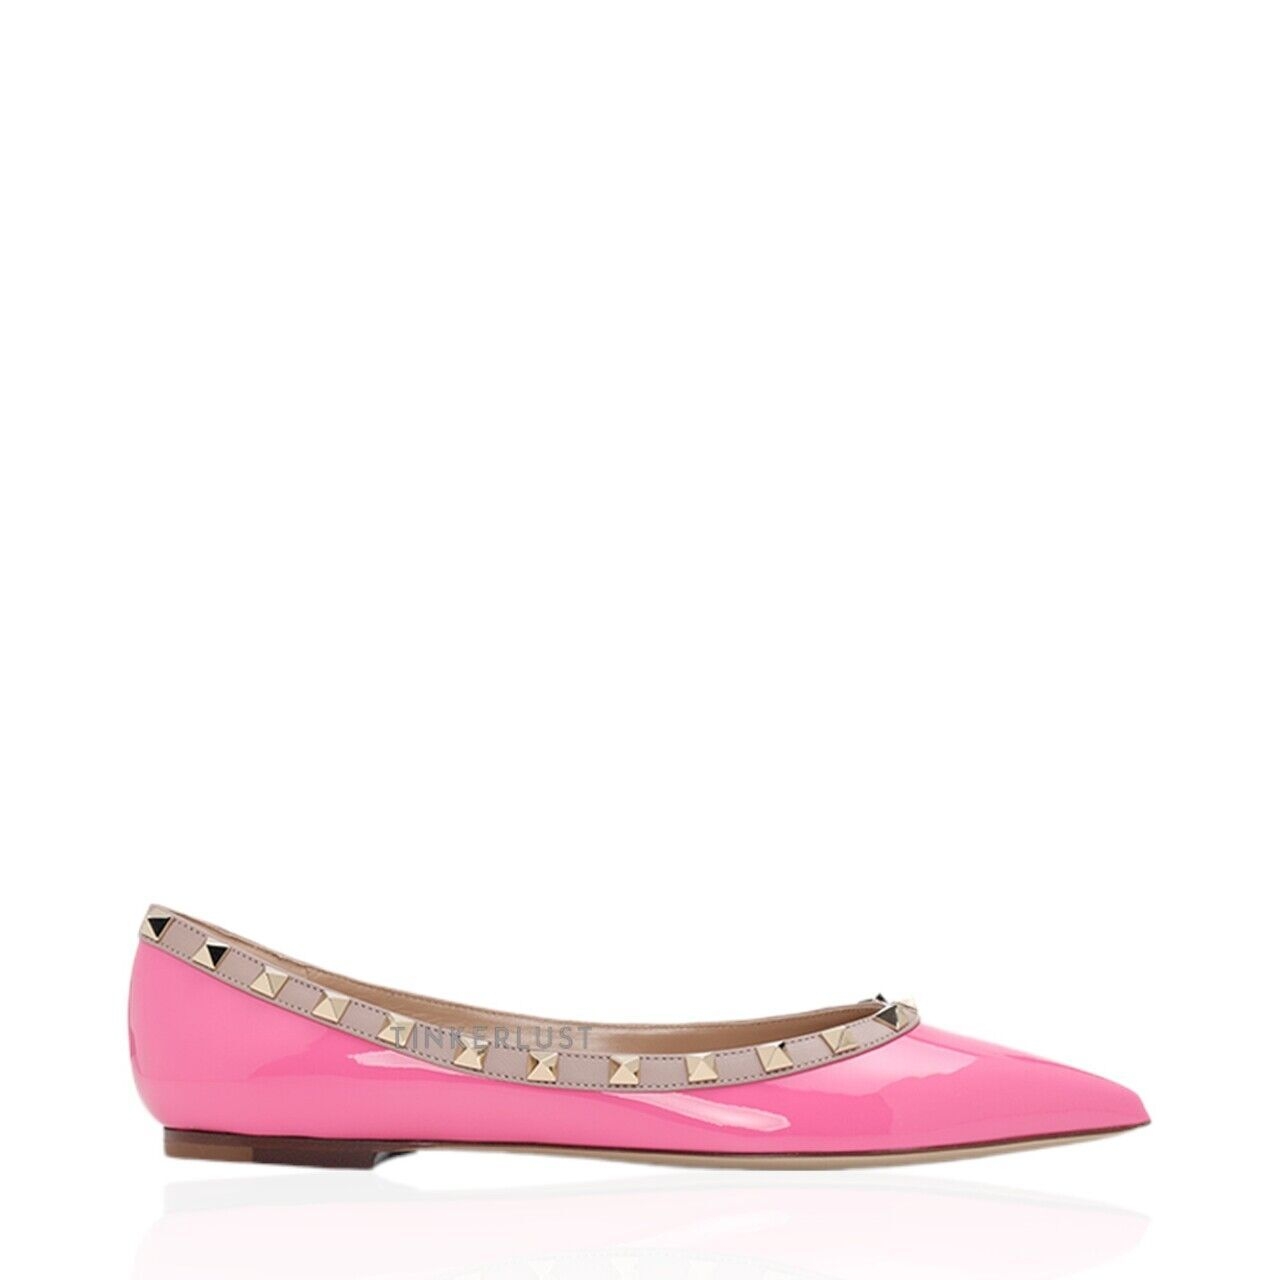 Valentino Rockstud Ballerina in Feminine Pink Patent Flats